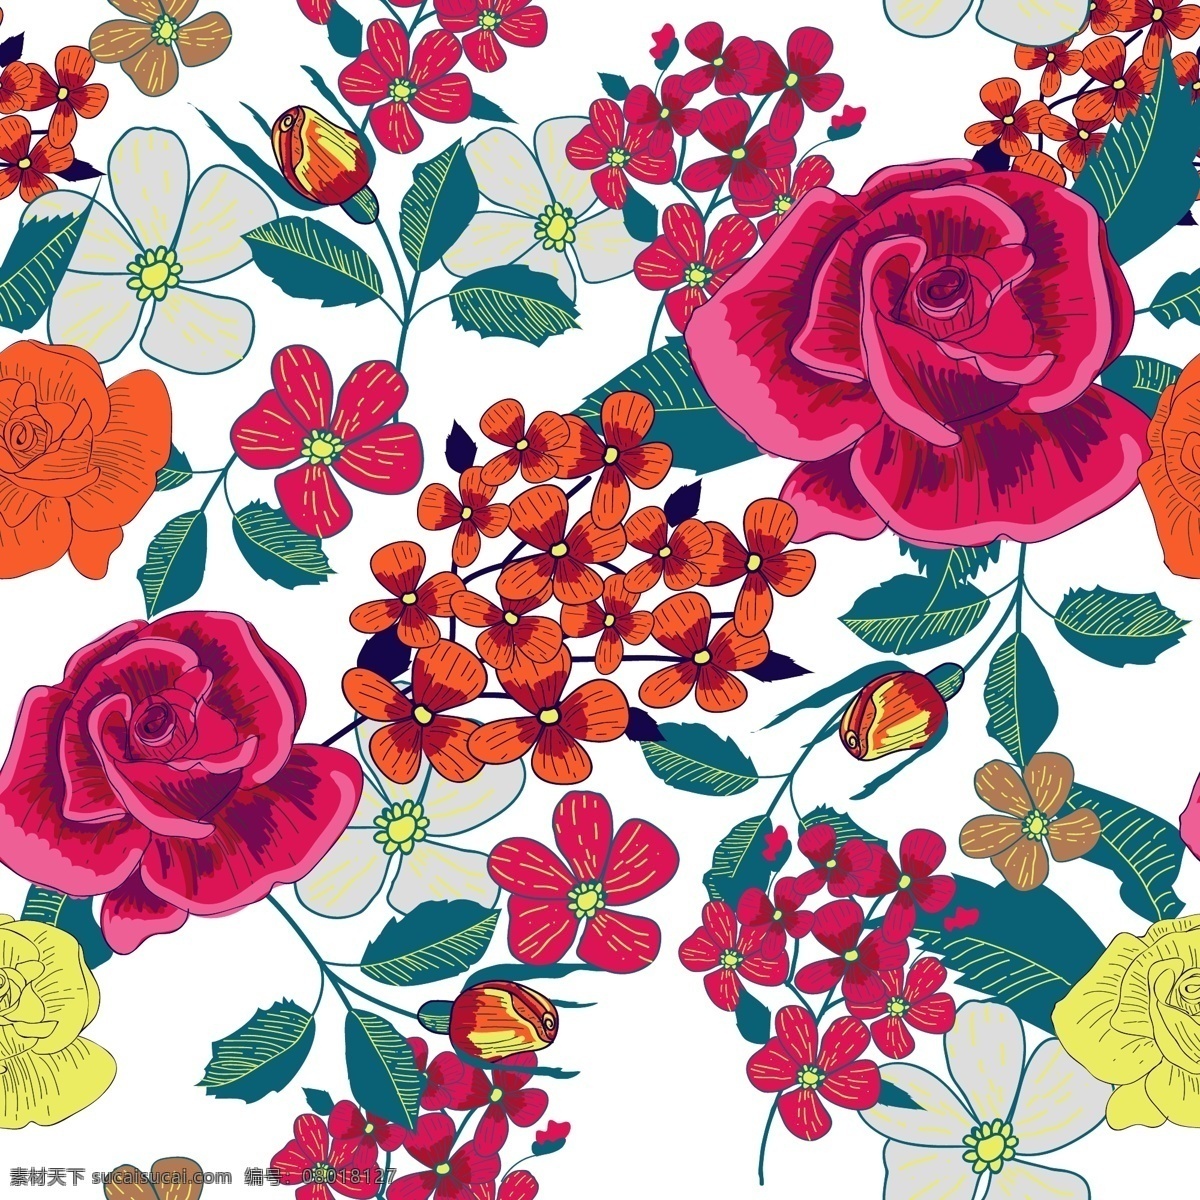 手绘 玫瑰花 矢量 背景 图 逼真 模板 设计稿 素材元素 鲜花 叶子 植物 源文件 矢量图